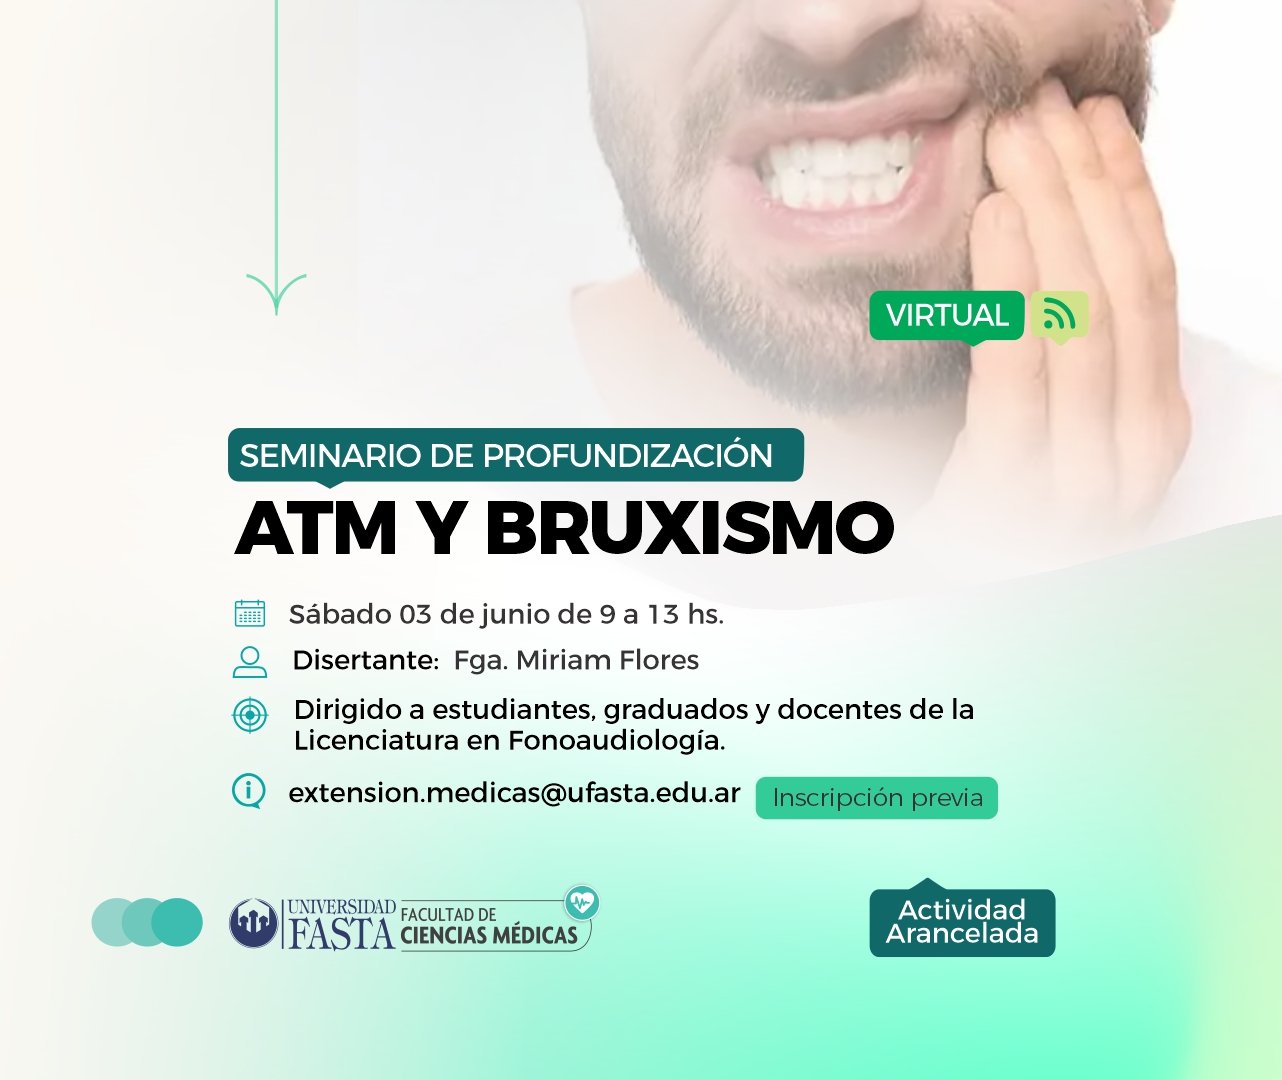 Seminario de Profundización "ATM Y BRUXISMO"